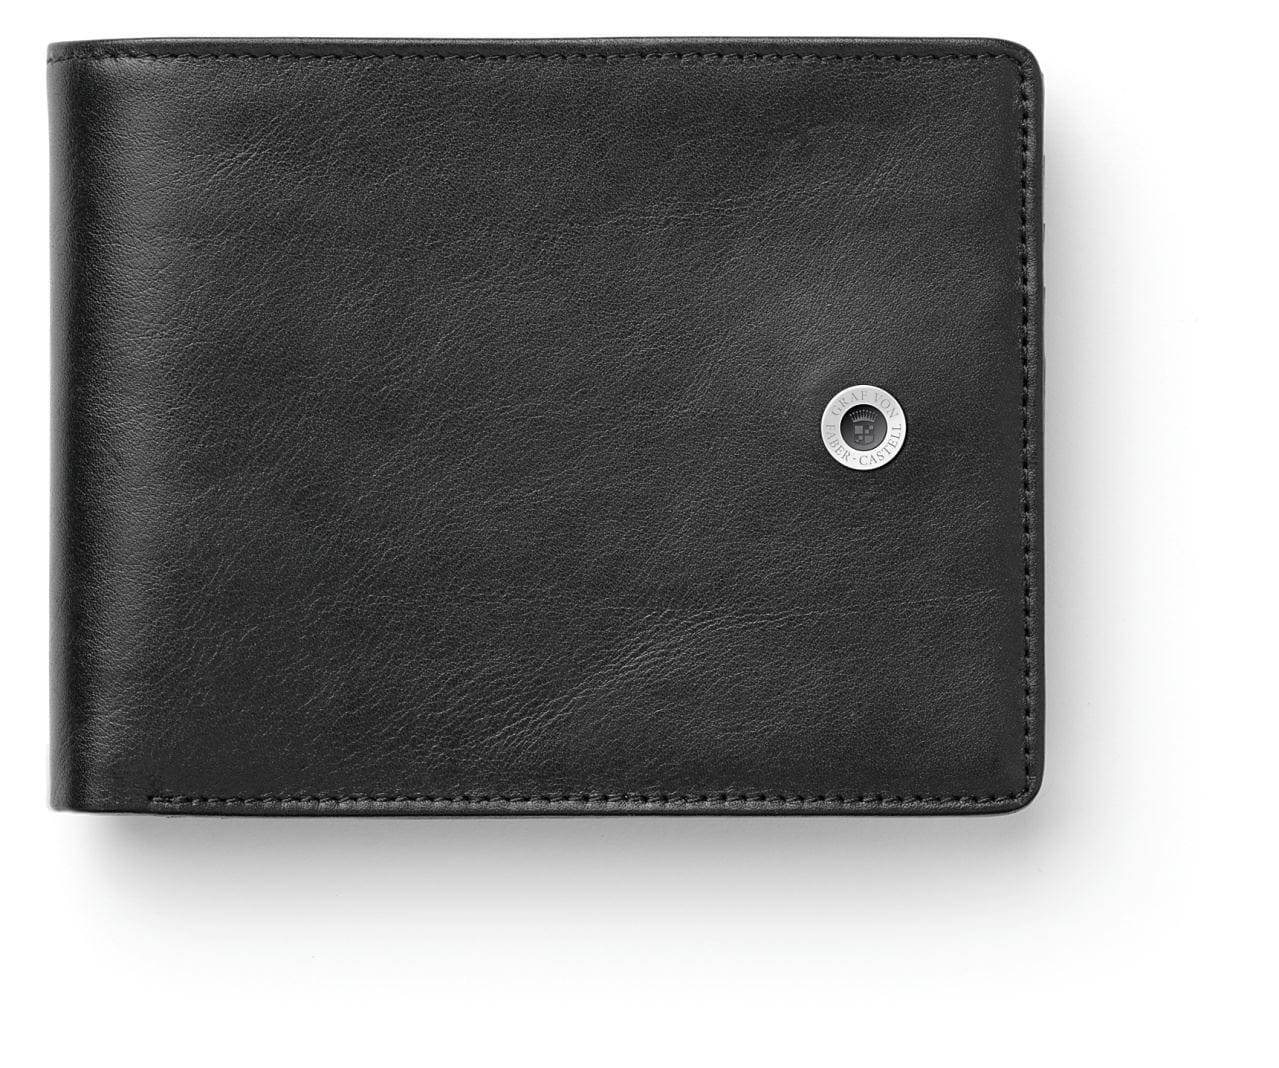 Graf-von-Faber-Castell - Credit card case, black smooth